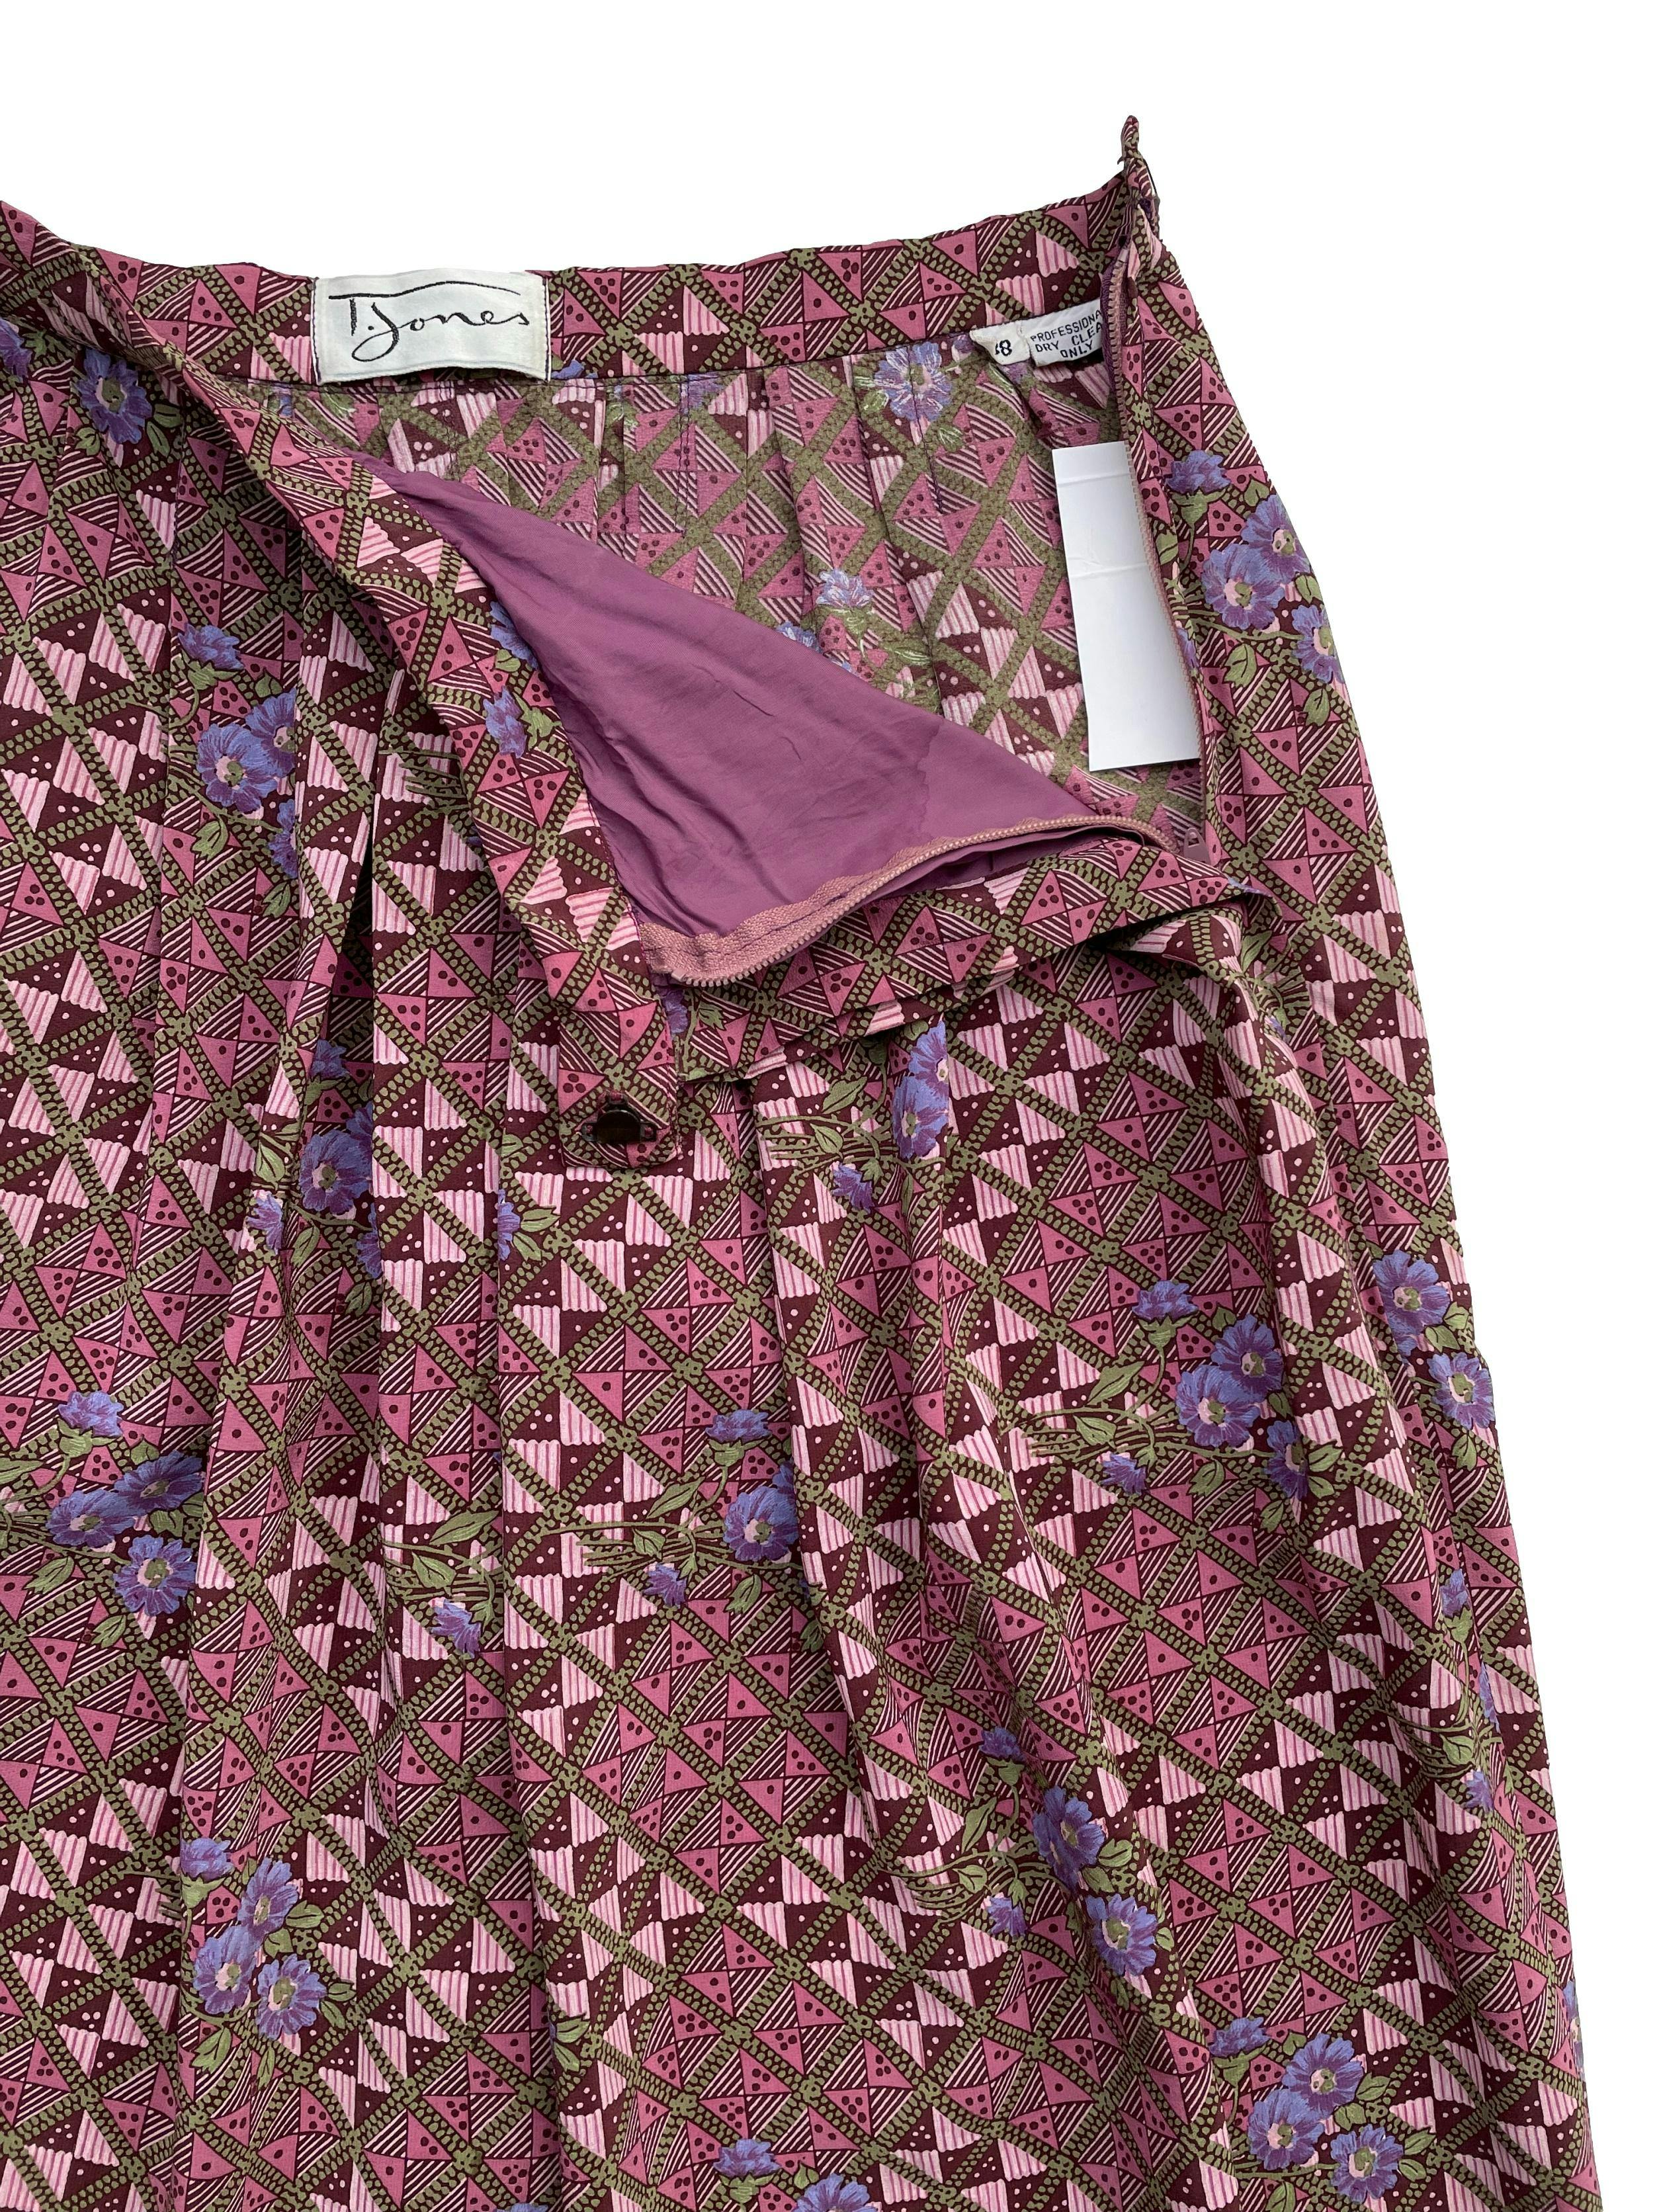 Falda vintage midi con estampado geométrico en tonos lila y textura sedosa, bolsillos laterales y cierre posterior. Cintura 62cm ,Largo 71cm.